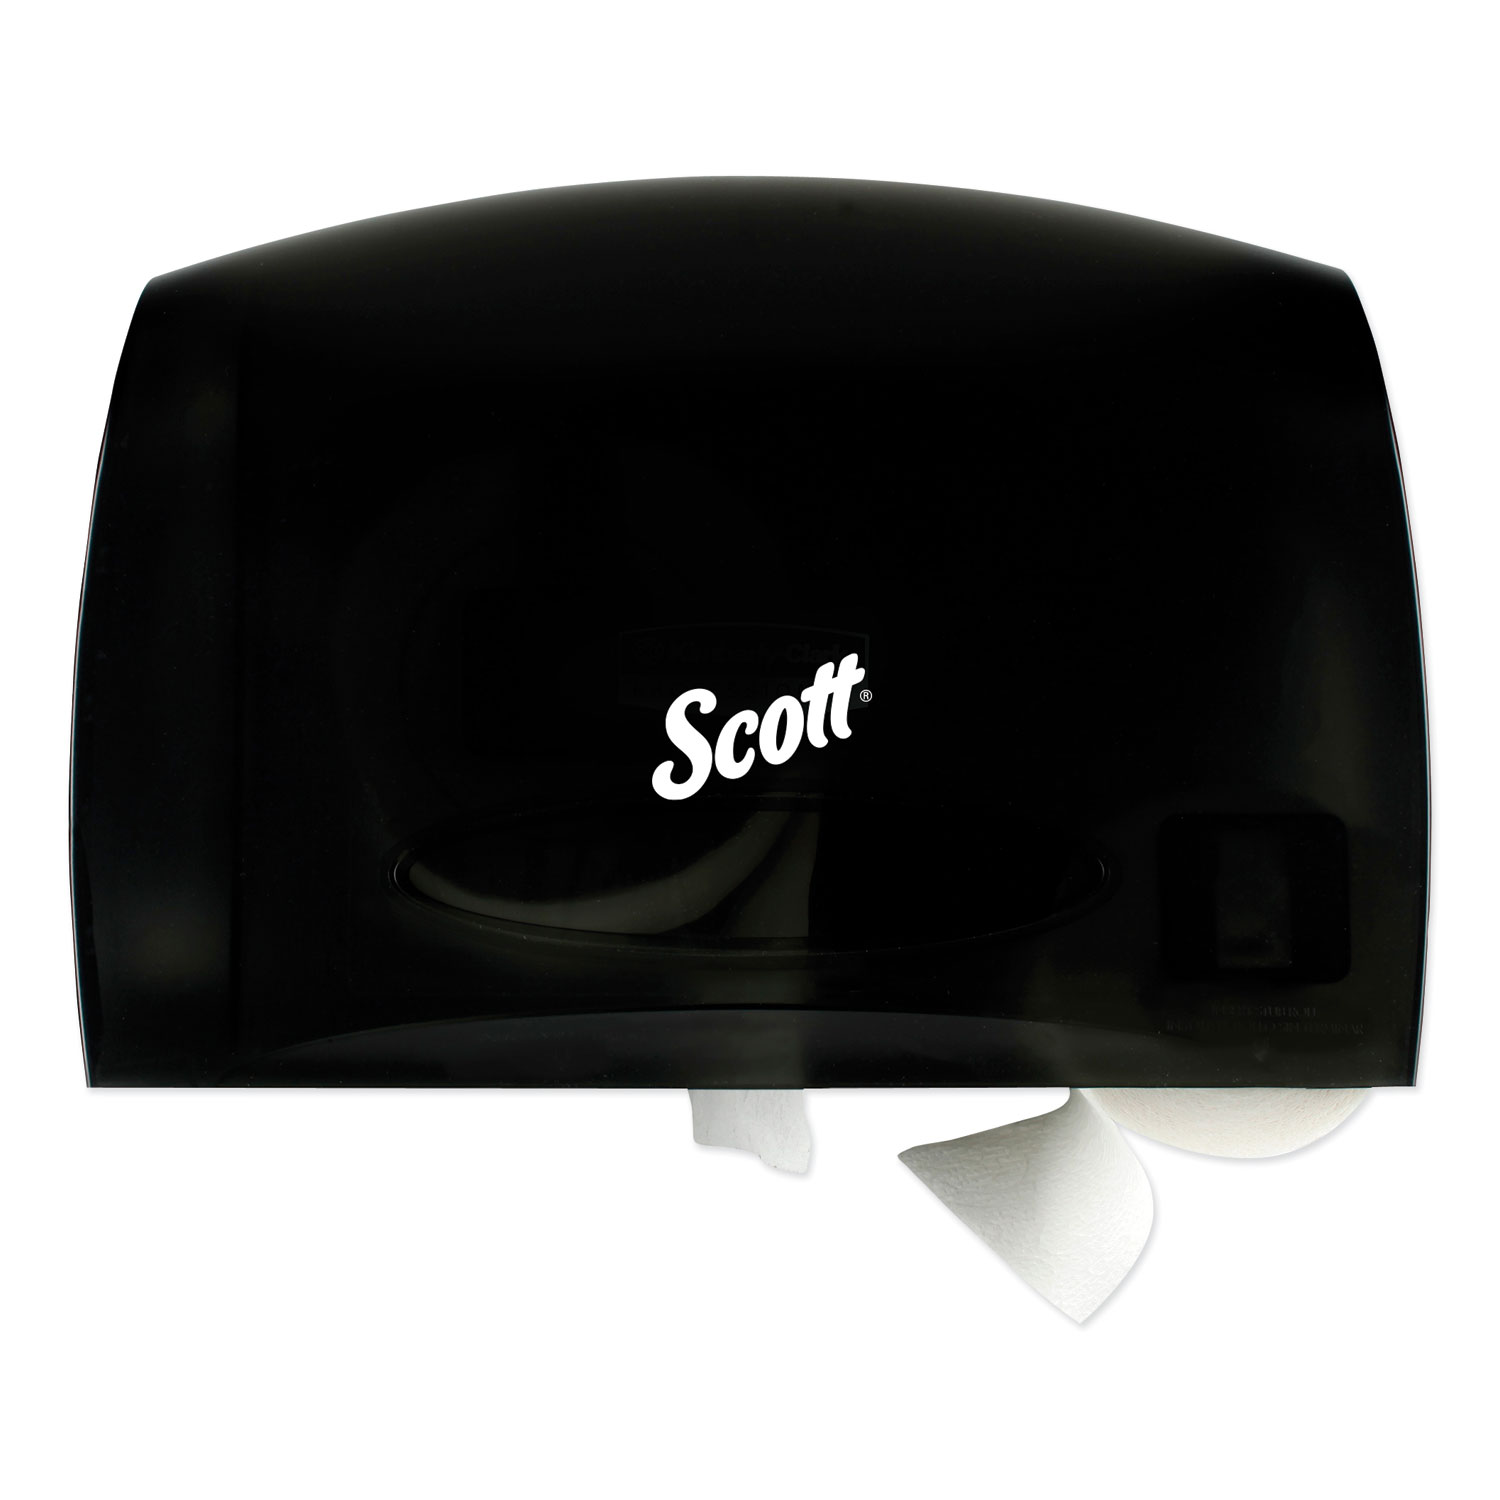  Scott 9602 Essential Coreless Jumbo Roll Tissue Dispenser, 14.25 x 6 x 9.7, Black (KCC09602) 